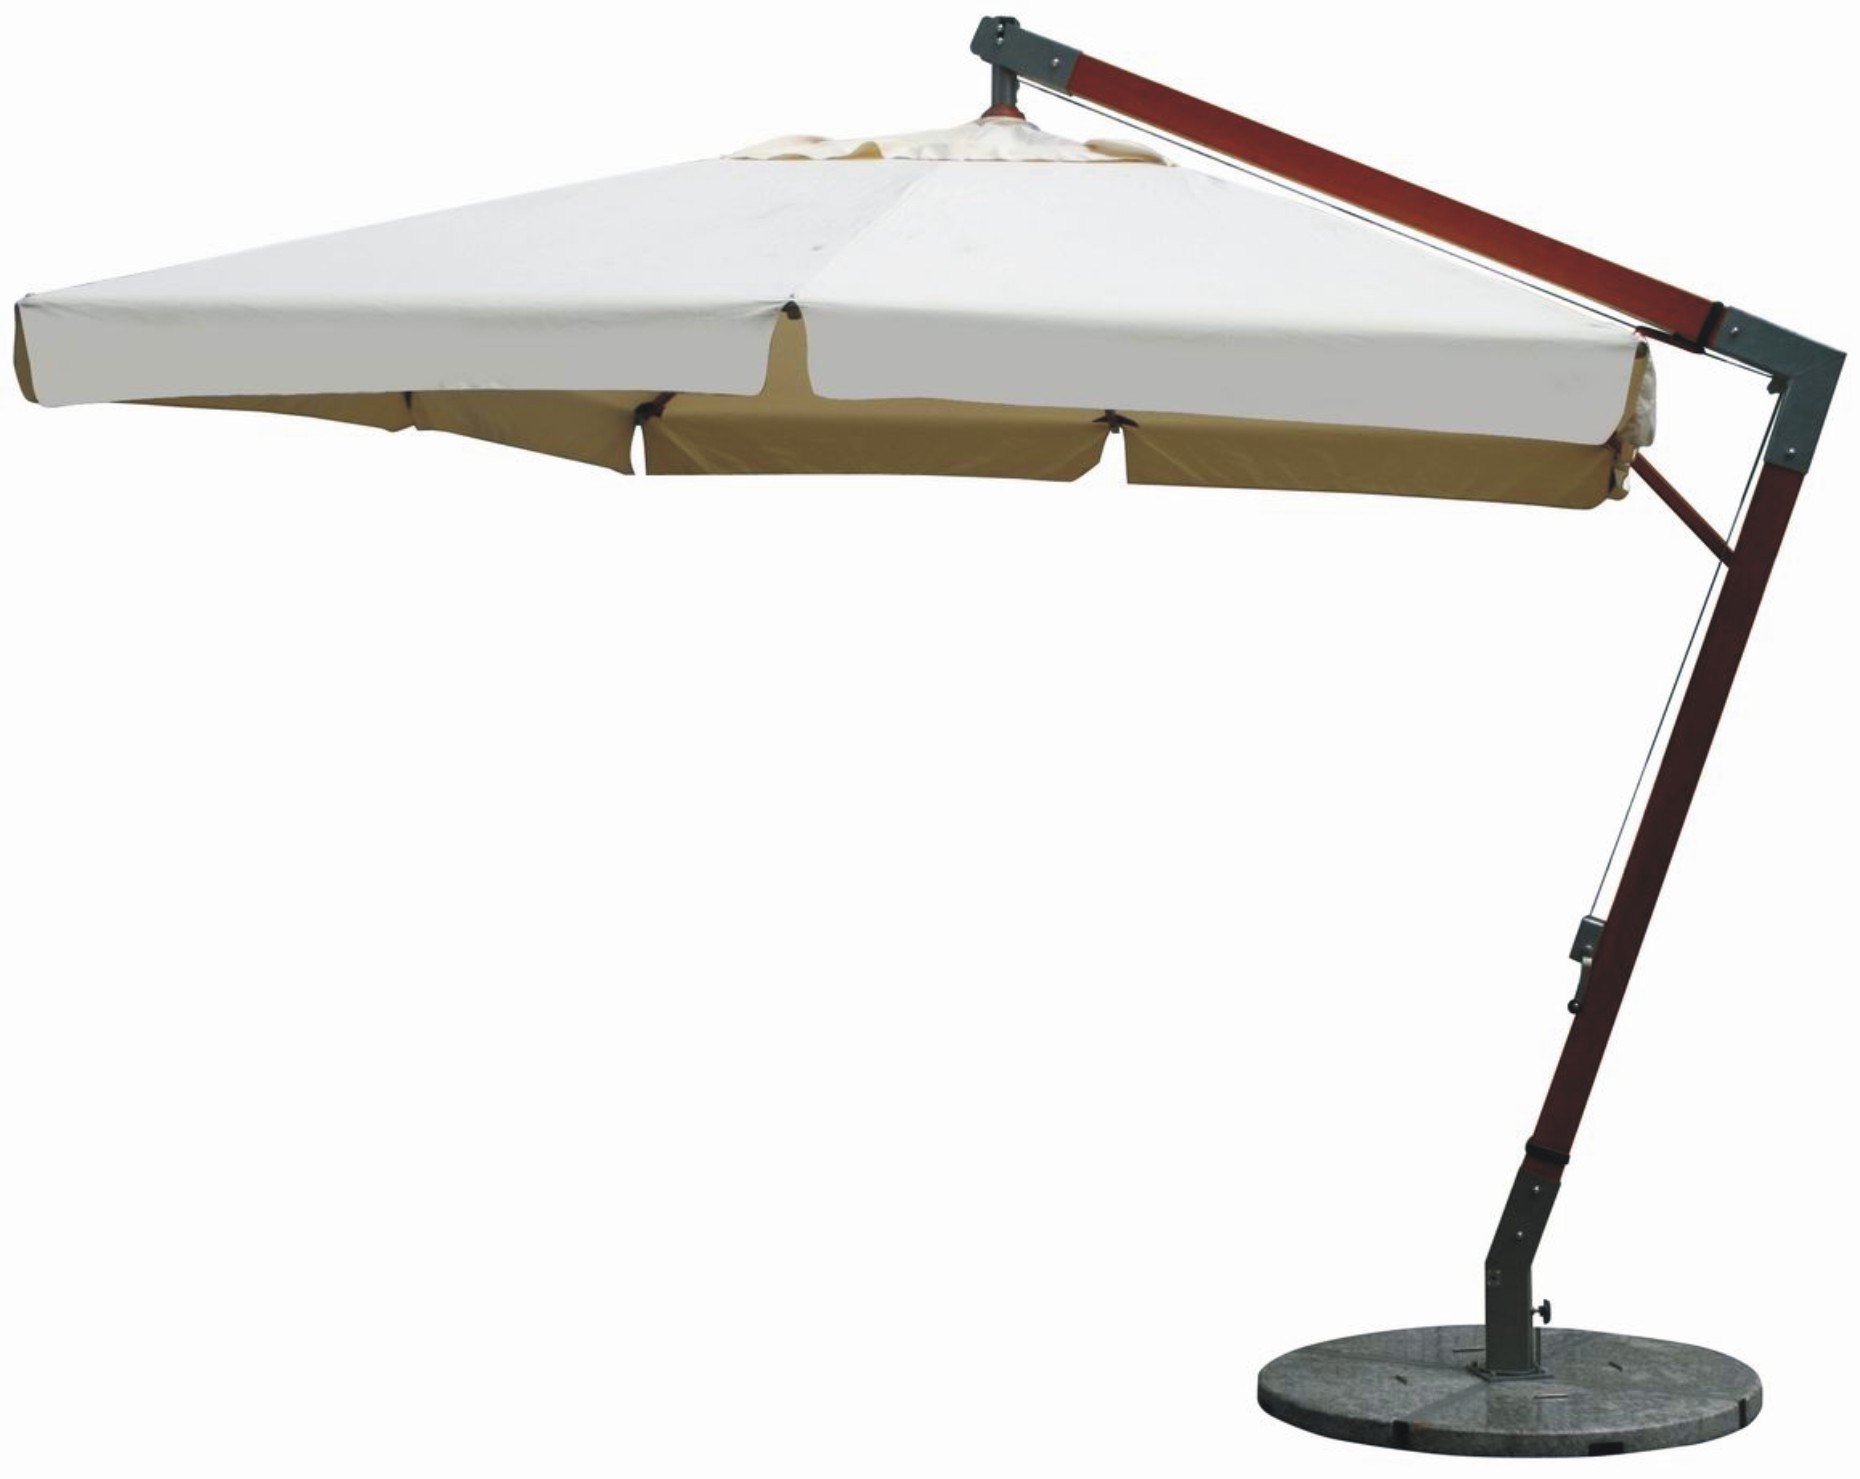 MICHELE SOGARI  Copertura per ombrellone 3x3 a Braccio decentrato Sacca Protettiva Idrorepellente Plastificata 